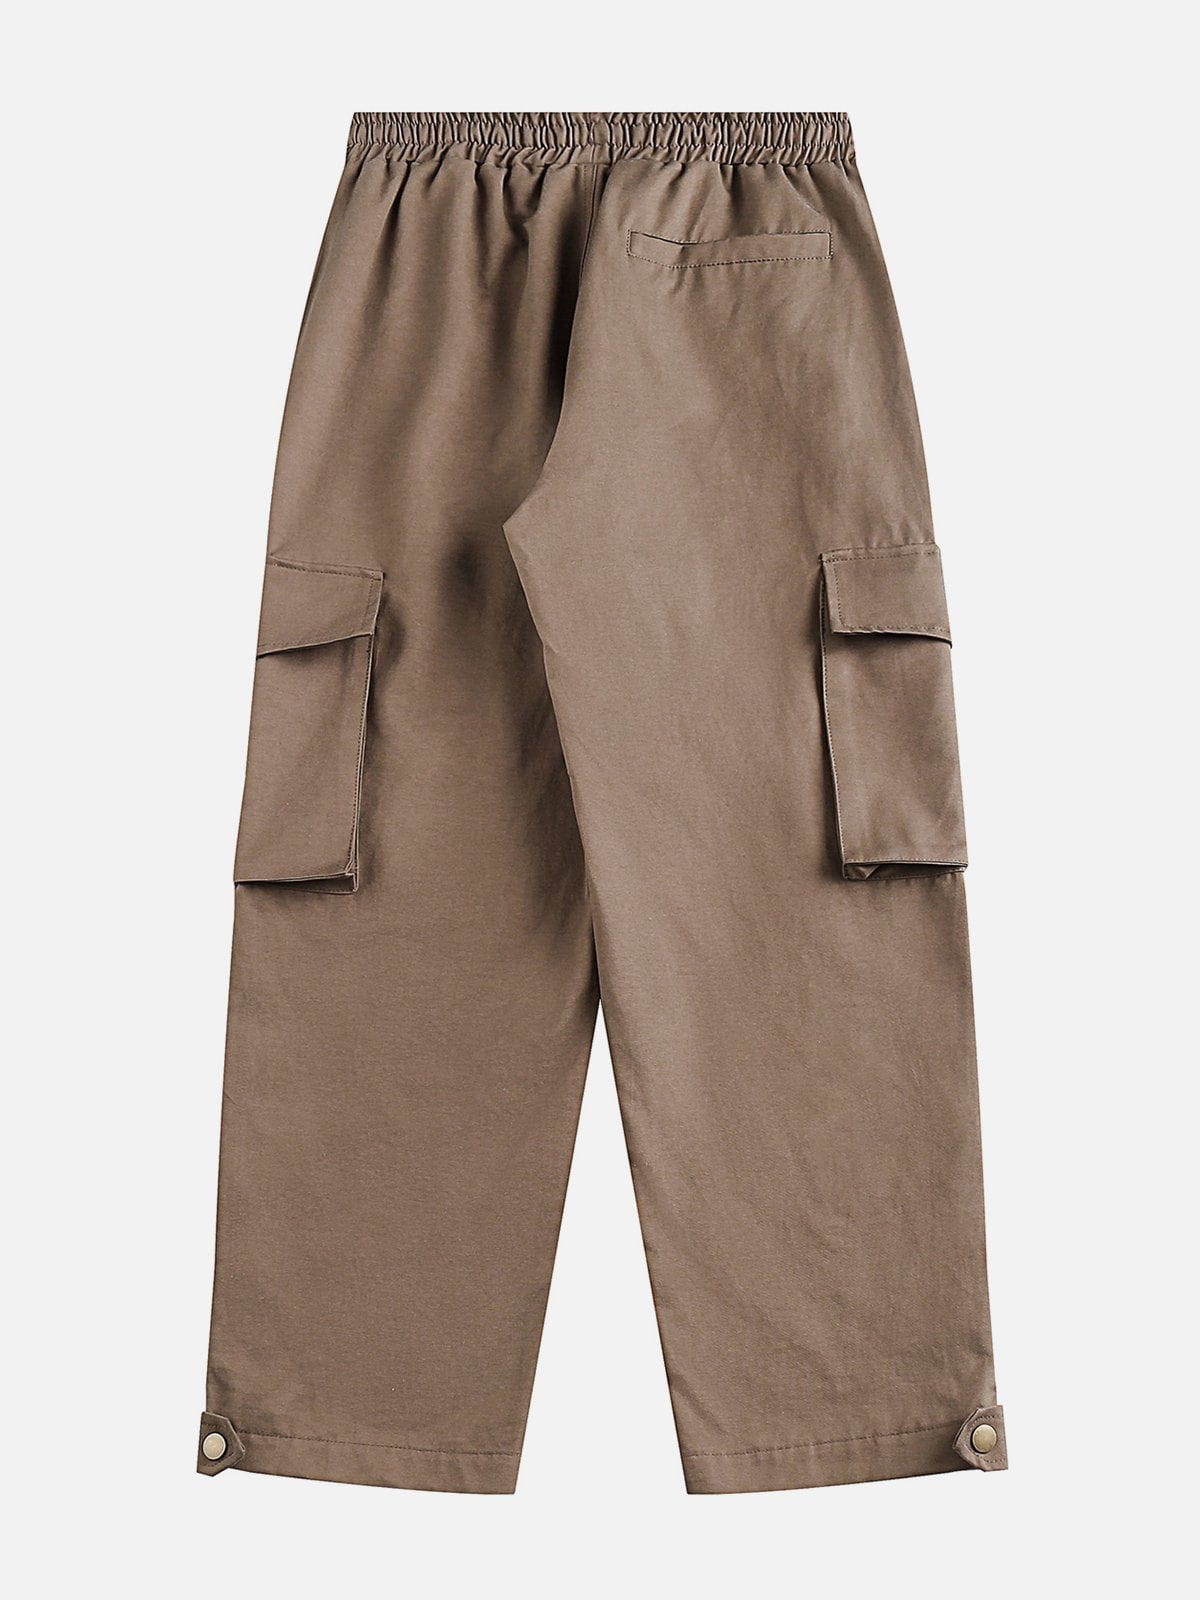 Eprezzy® - Multi-pocket ZIP UP Cargo Pants Streetwear Fashion - eprezzy.com